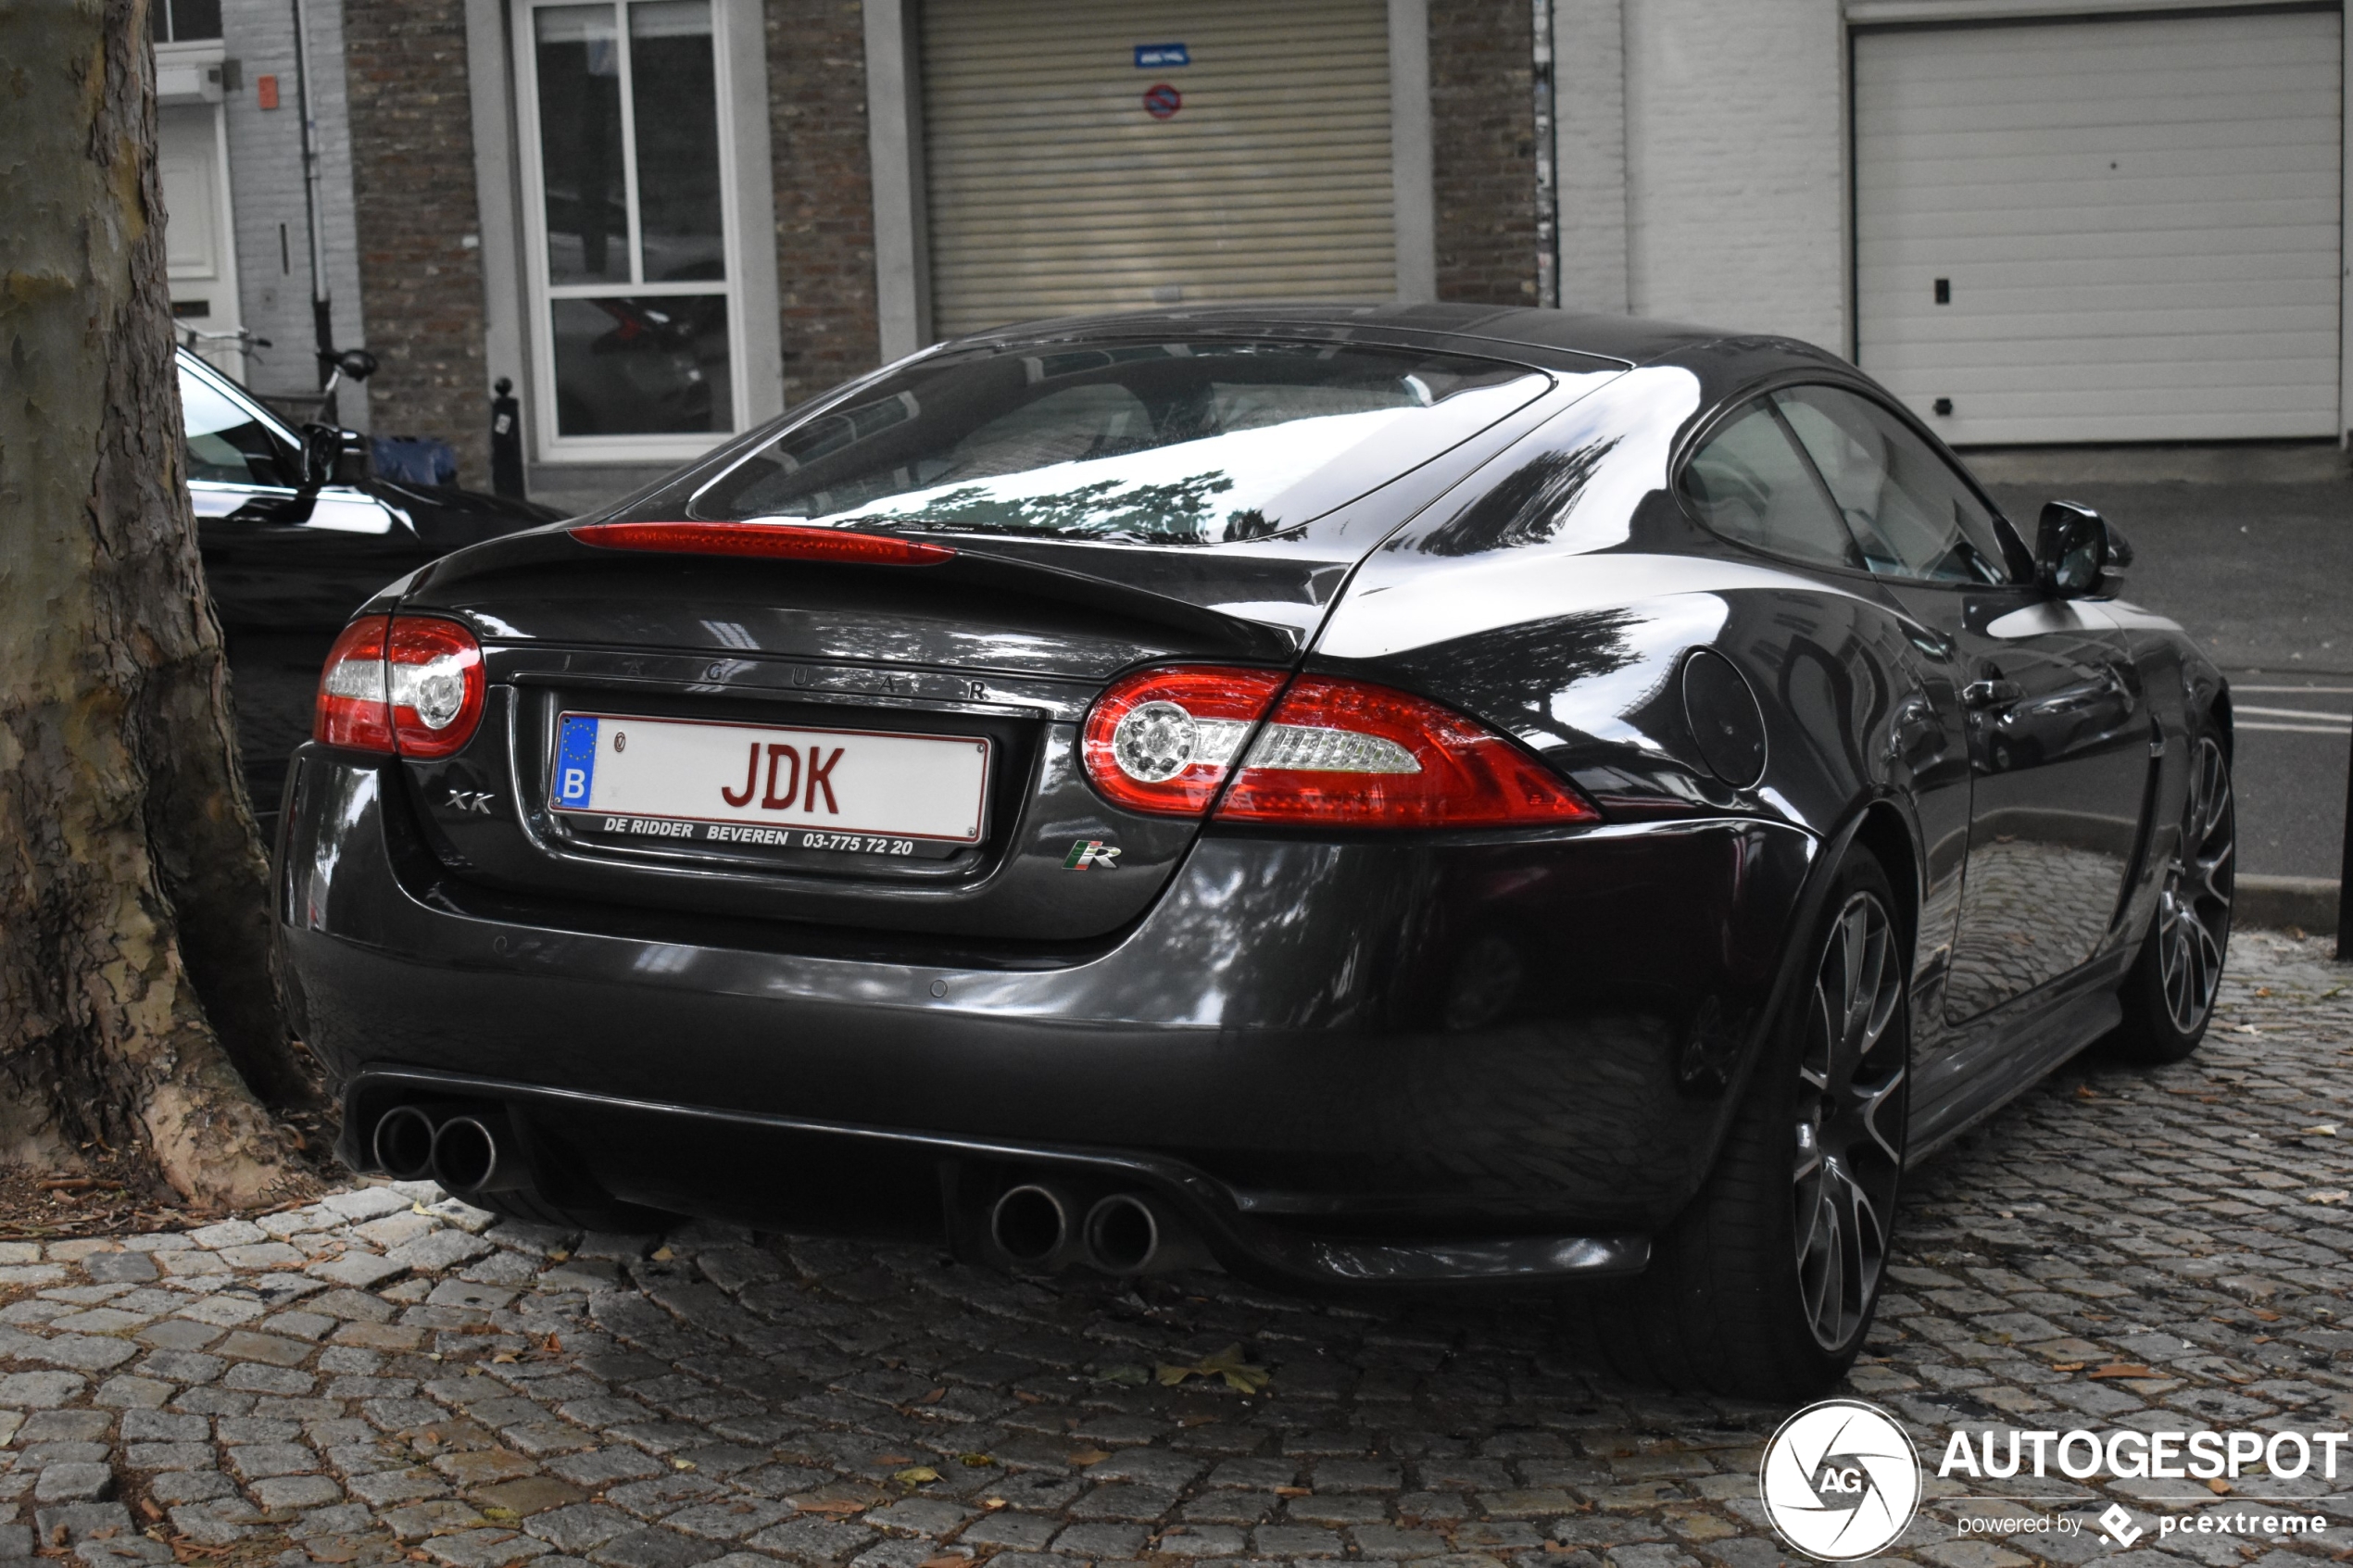 Jaguar XKR 75 Limited Edition